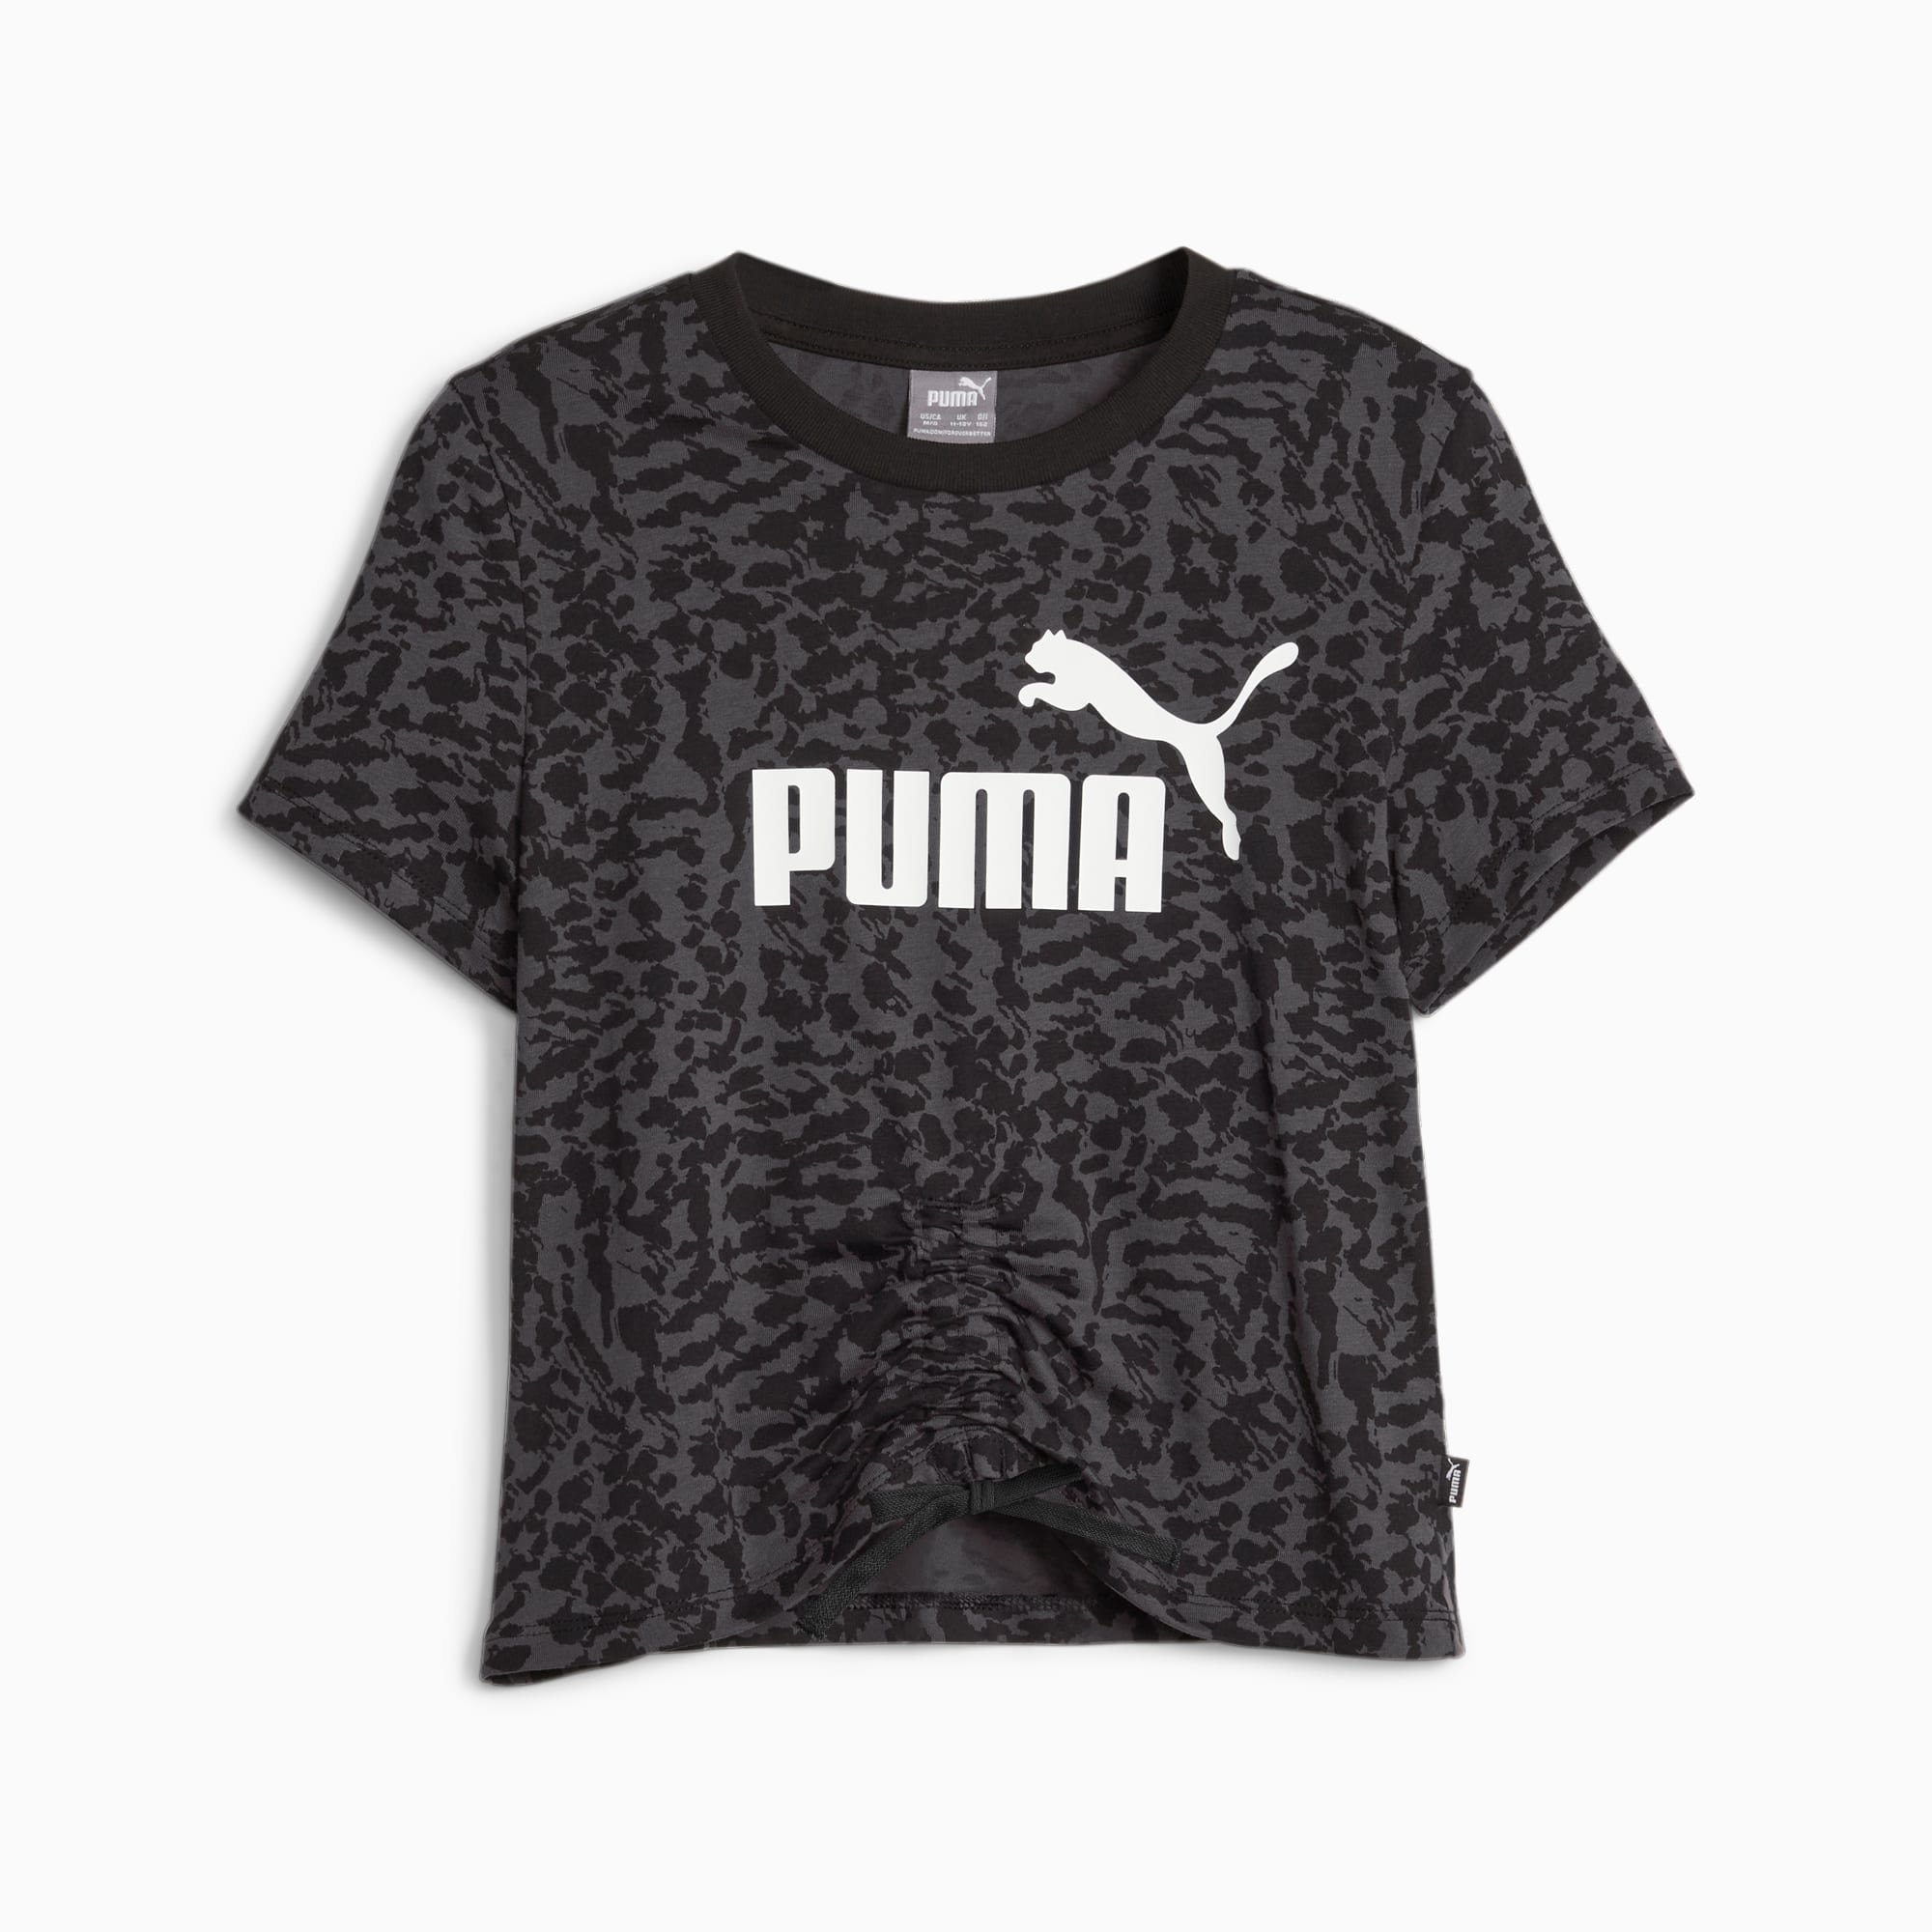 PUMA Ess+ Animal Youth T-Shirt, Black